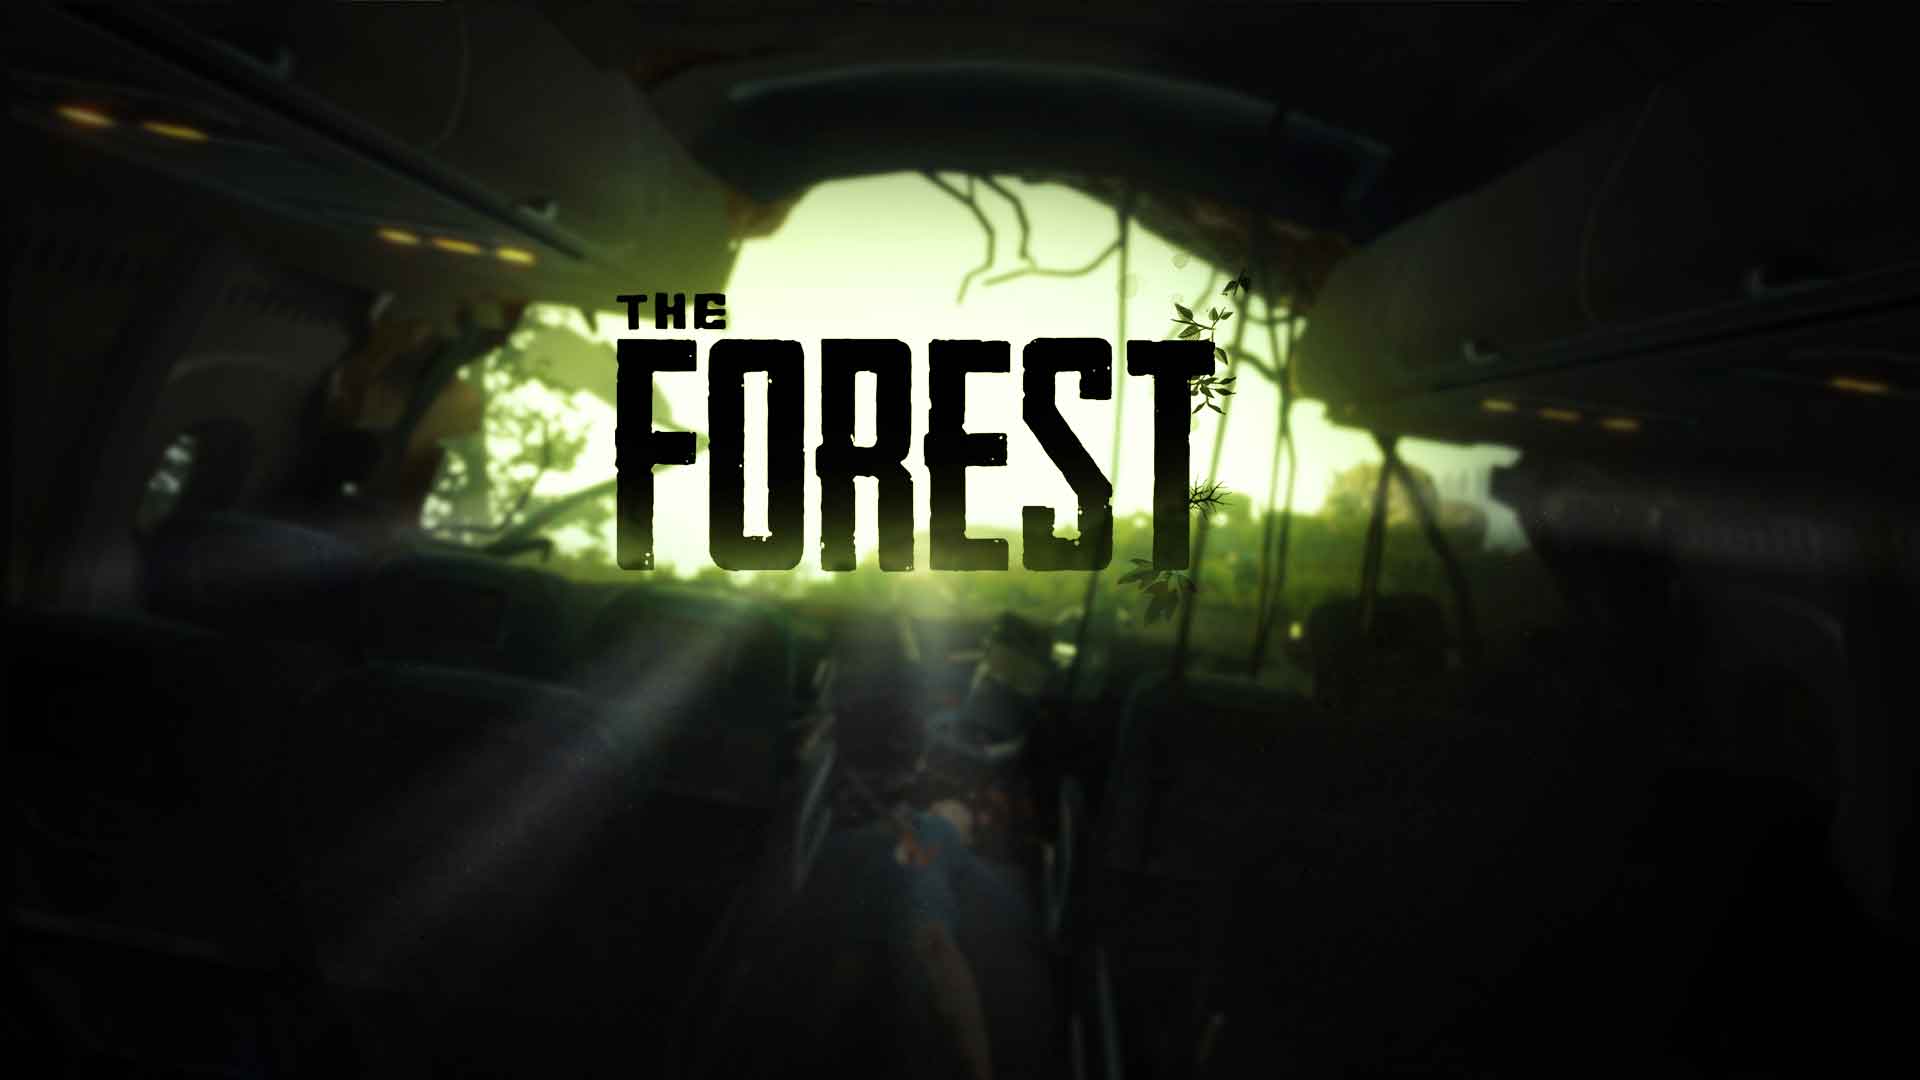 Sons of the Forest: Todos los finales posibles y cómo